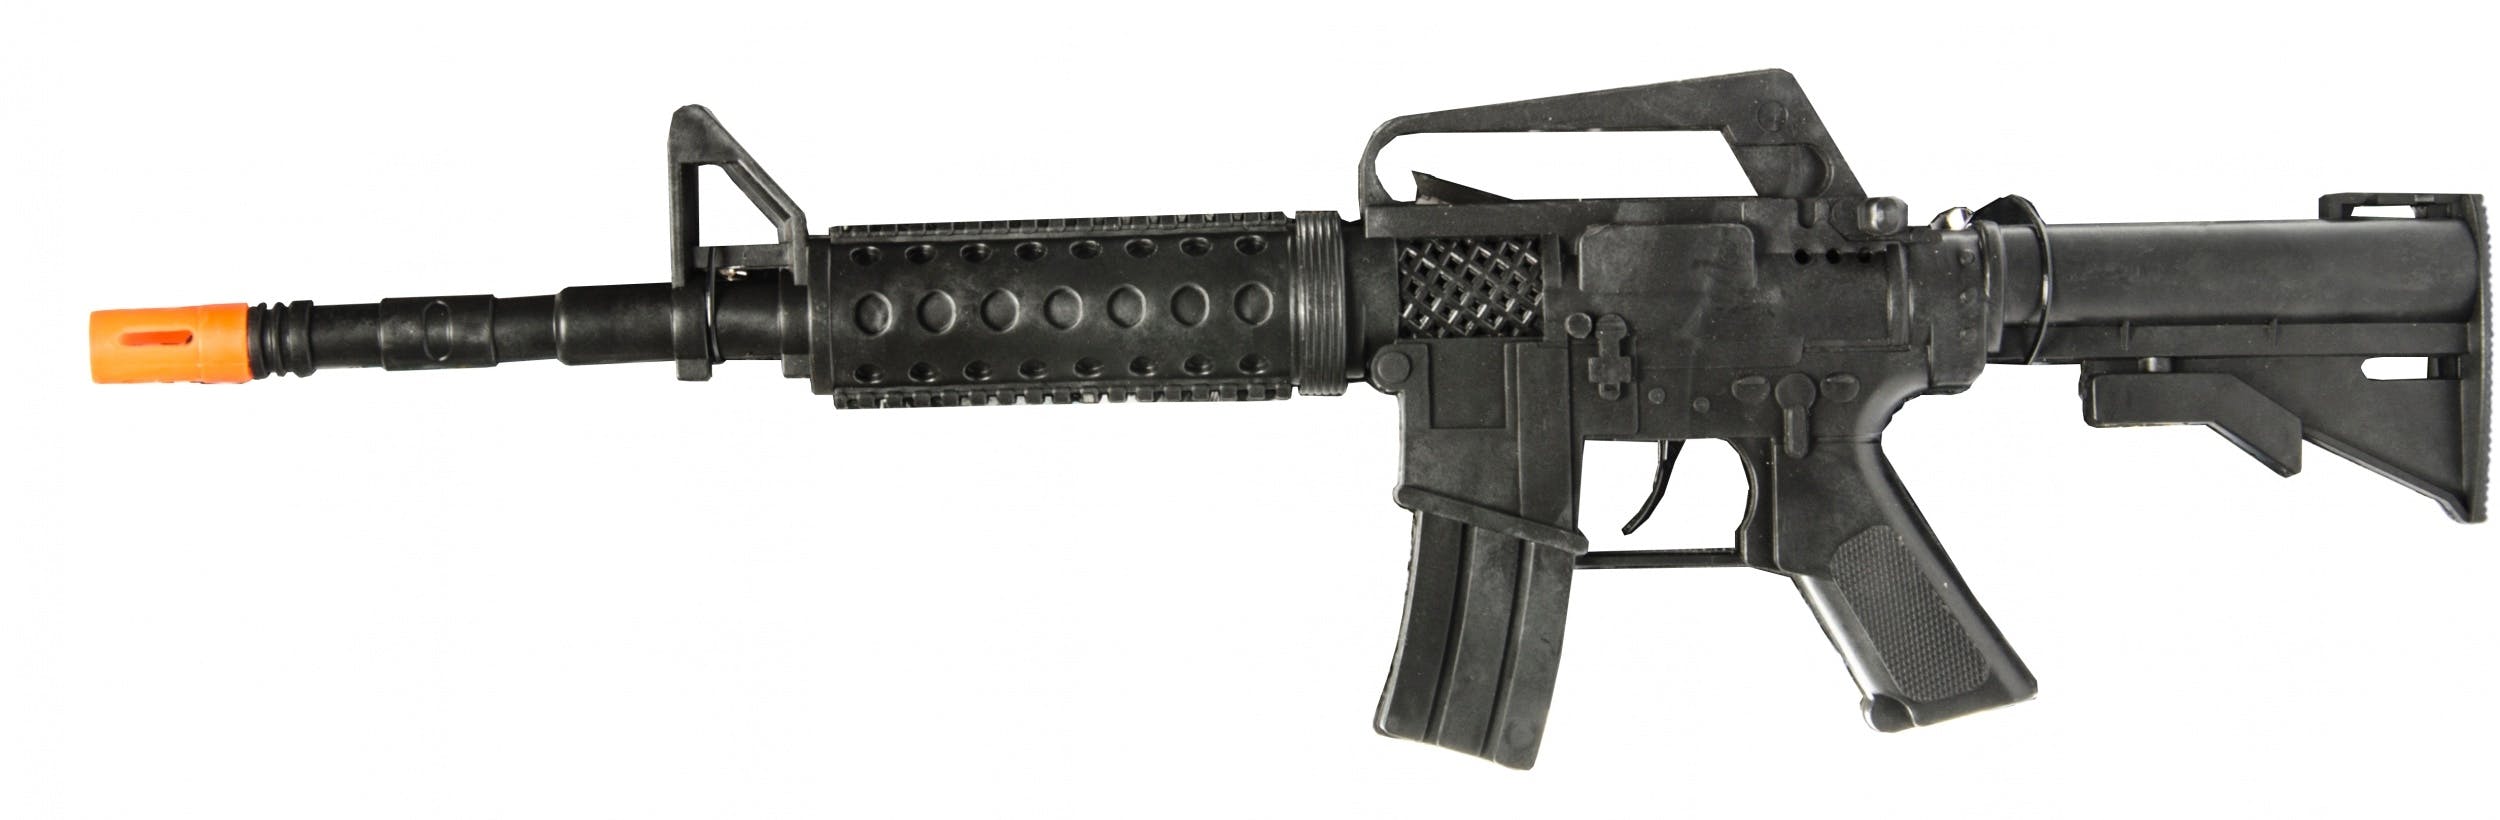 Arme Fusil M16 